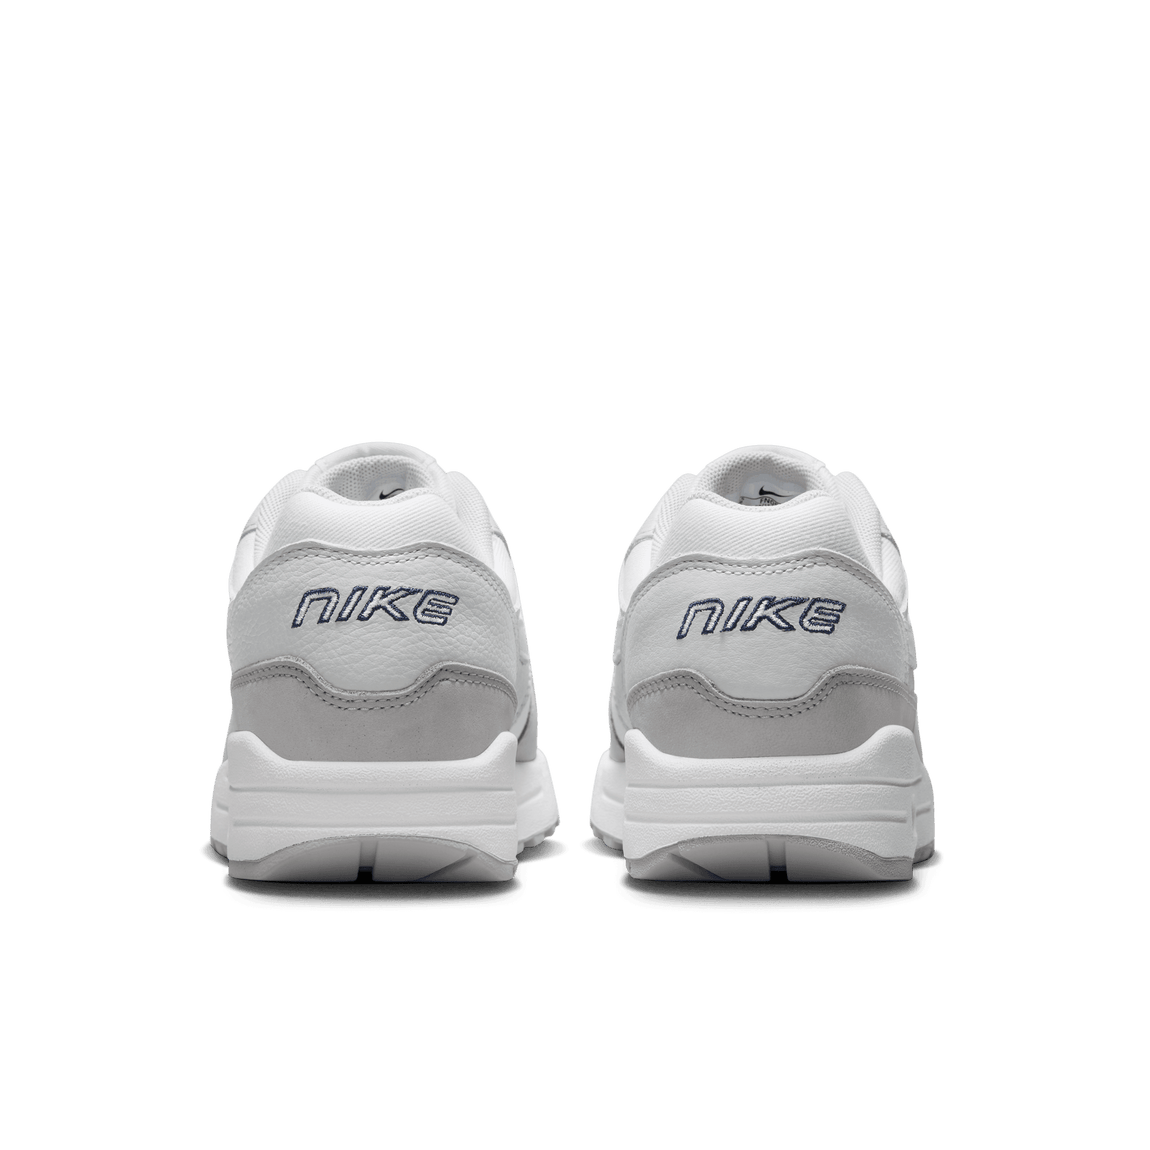 Women's Nike Air Max 1 '87 LX NBHD (Photon Dust/White-LT Smoke Grey) - Women's Nike Air Max 1 '87 LX NBHD (Photon Dust/White-LT Smoke Grey) - 